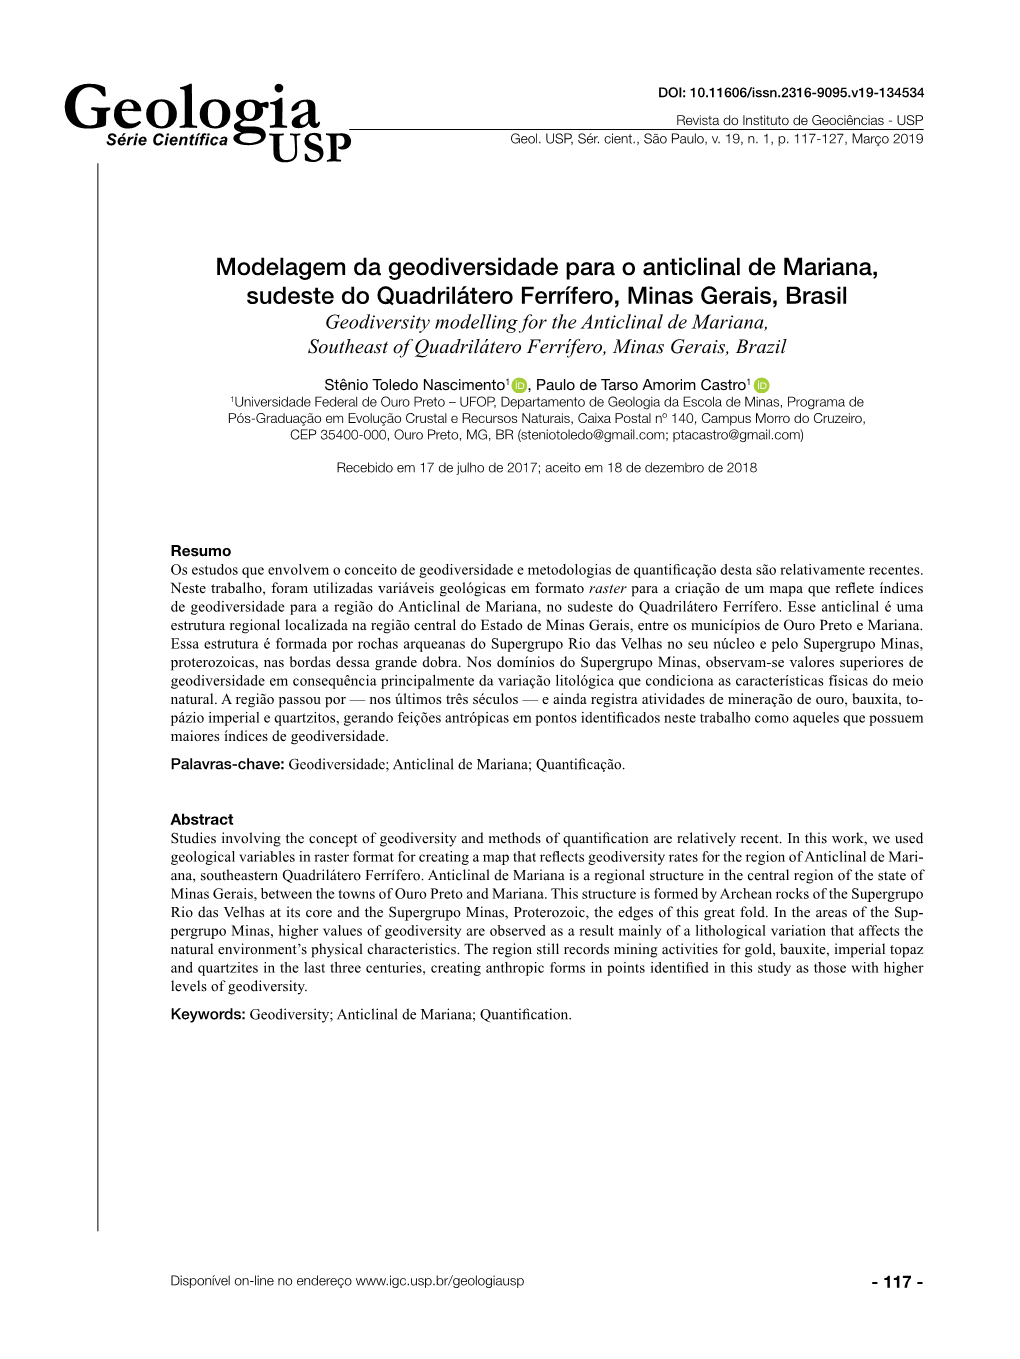 Modelagem Da Geodiversidade Para O Anticlinal De Mariana, Sudeste Do